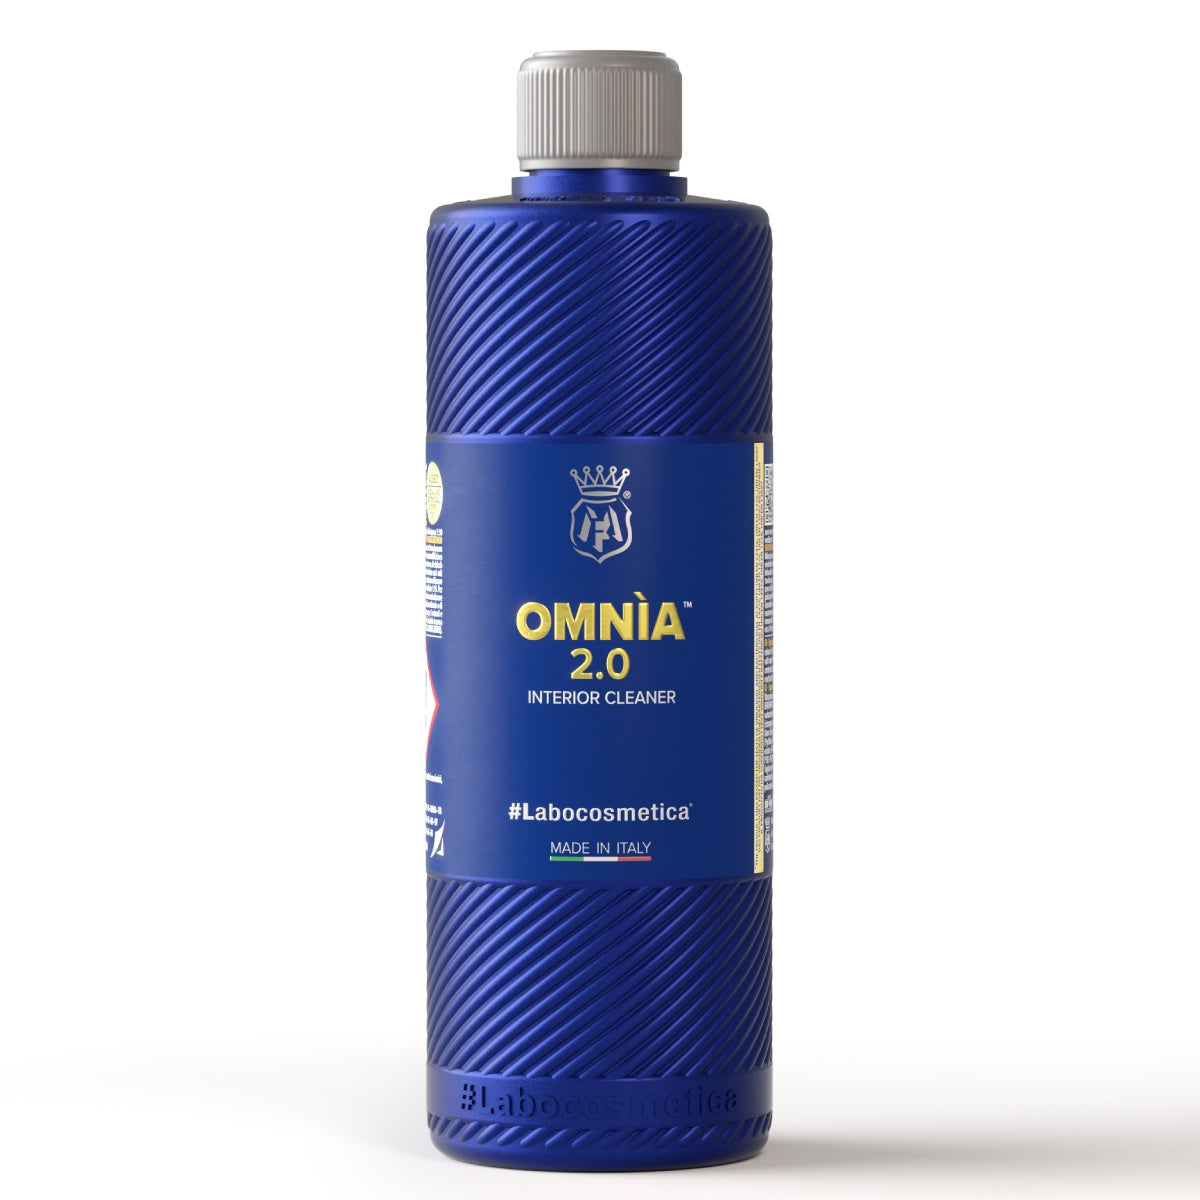 #Labocosmetica #Omnia 2.0 (Interior Cleaner) - 500ml